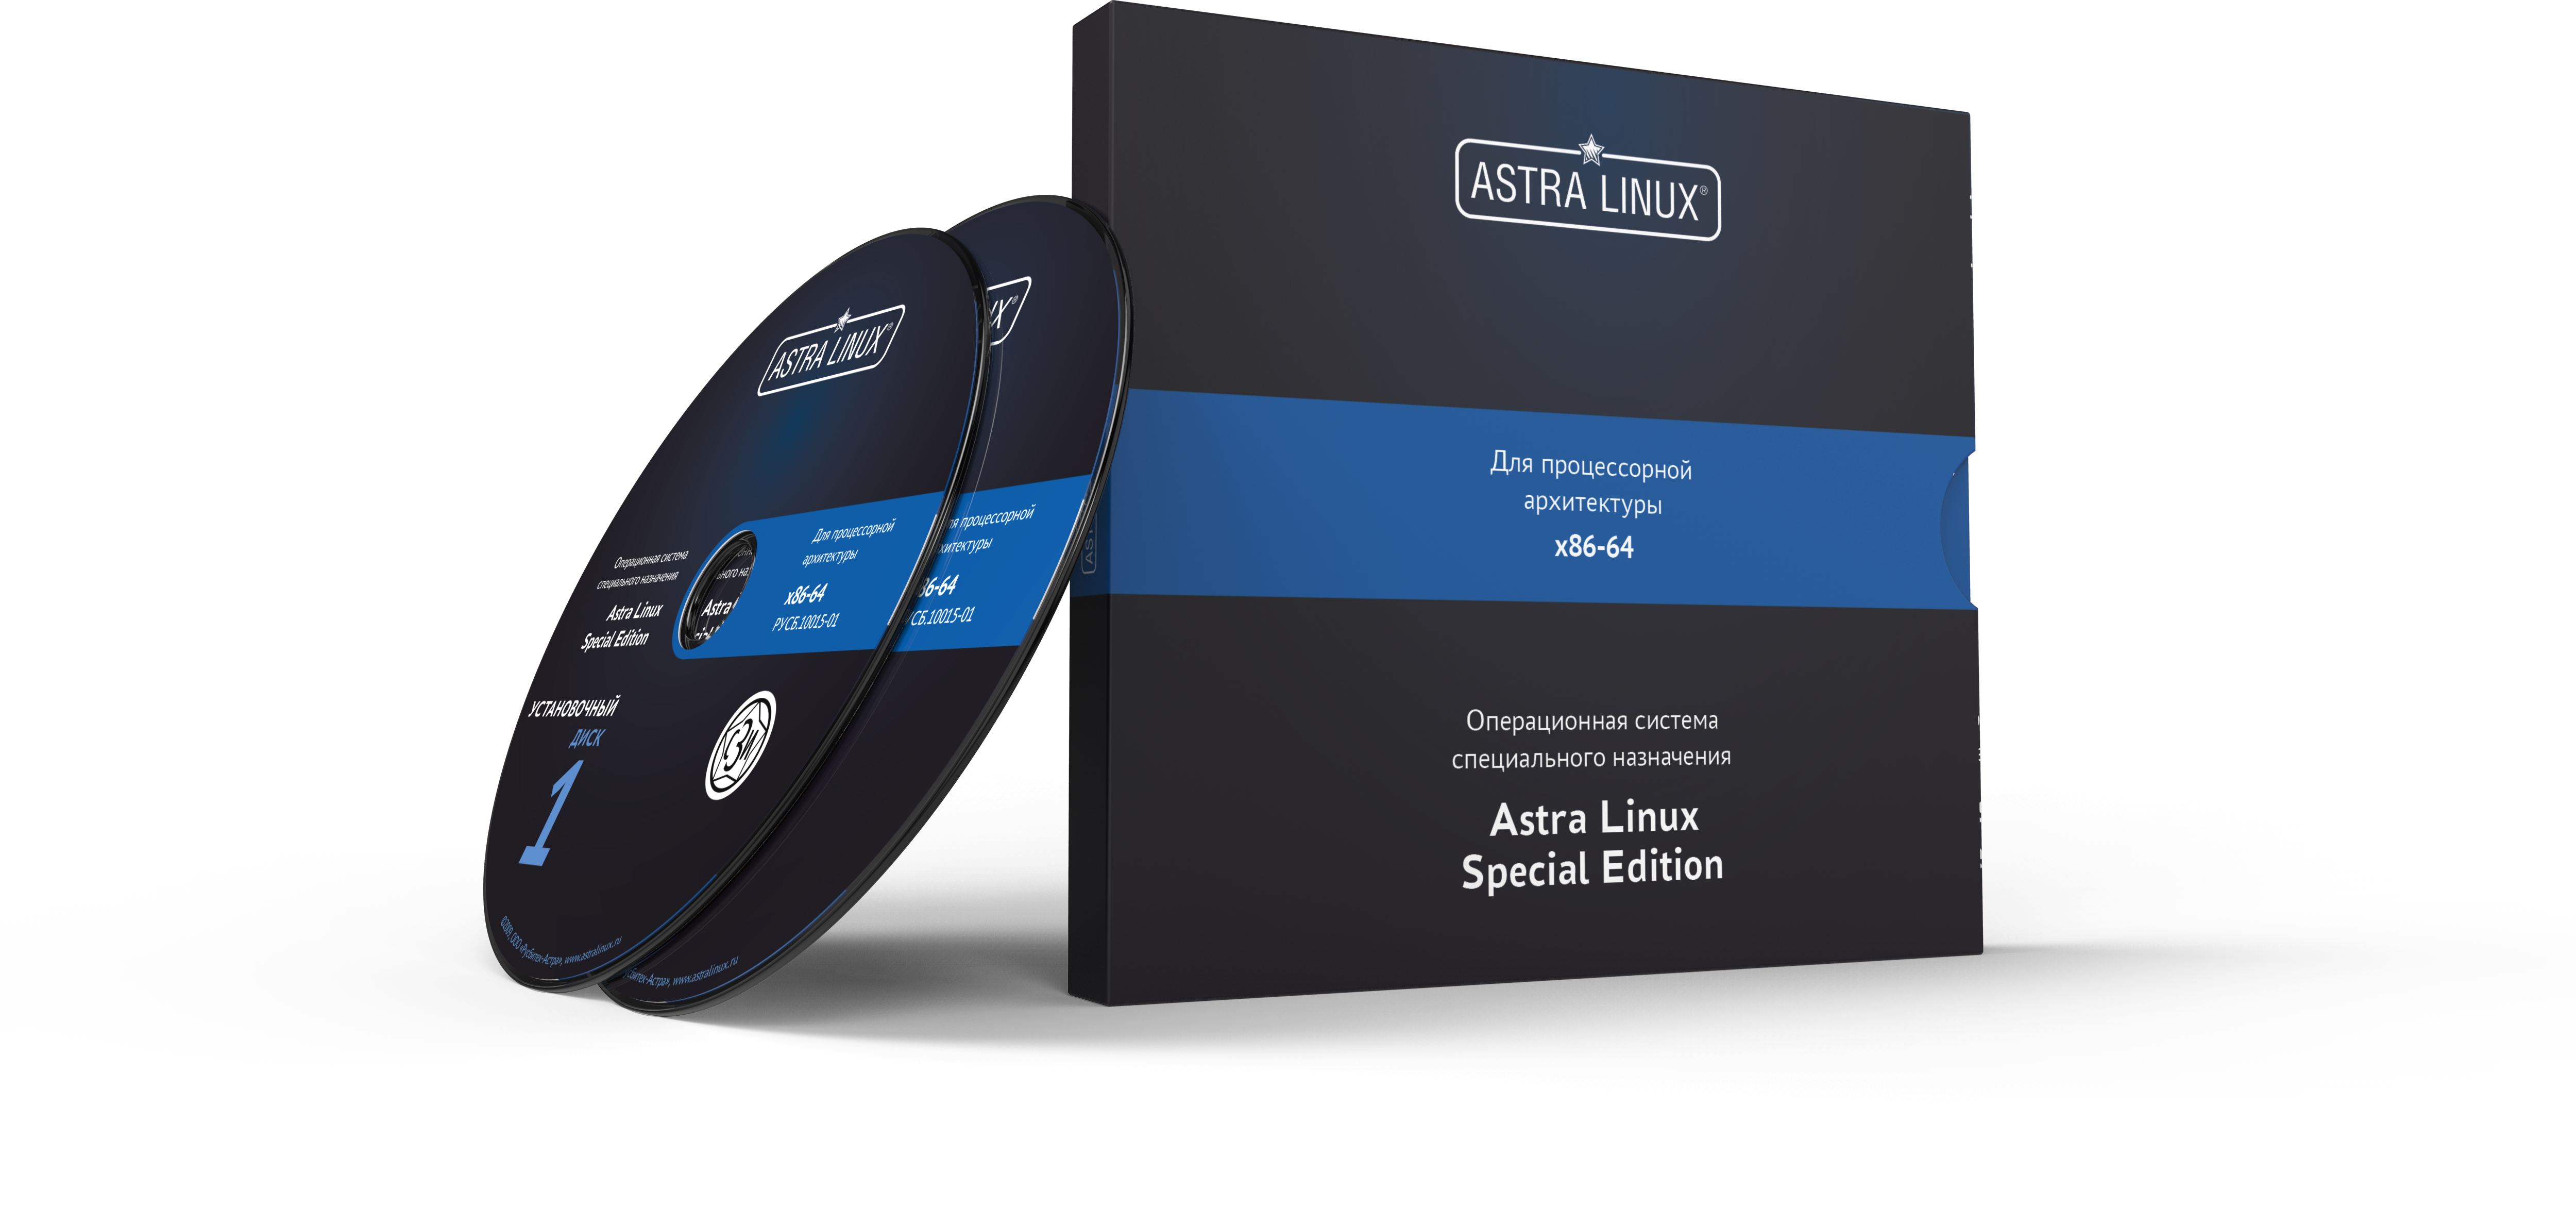 Astra Linux Special Edition 1.7 - Воронеж, для рабочей станции, диск, "Усиленный", без огр. срока, ТП "Привилегированная" на 36 мес.